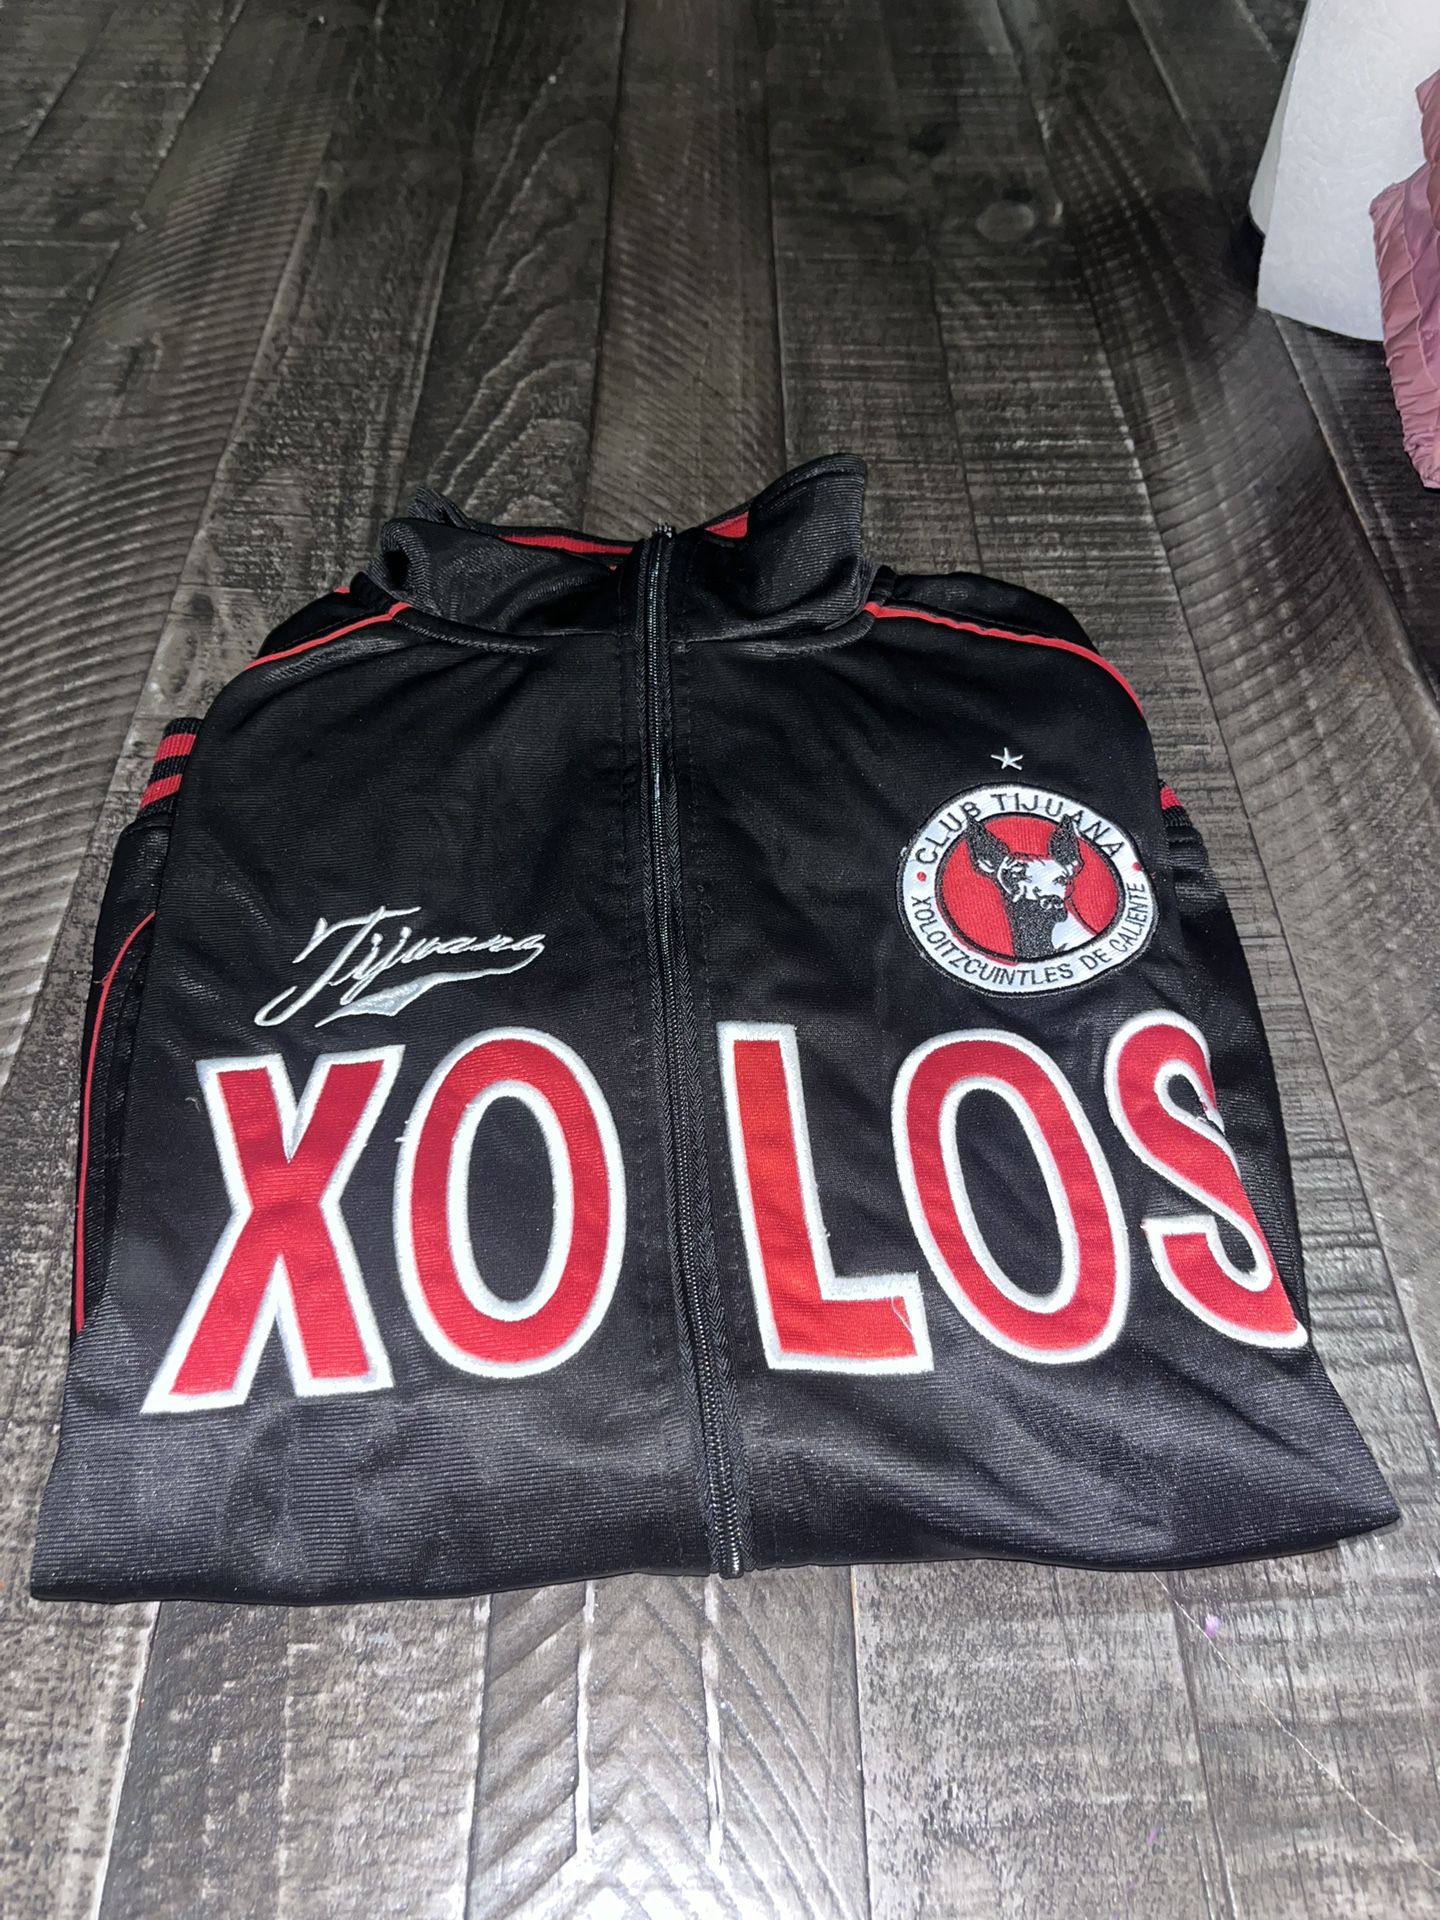 Xolos Tijuana Track Jacket 